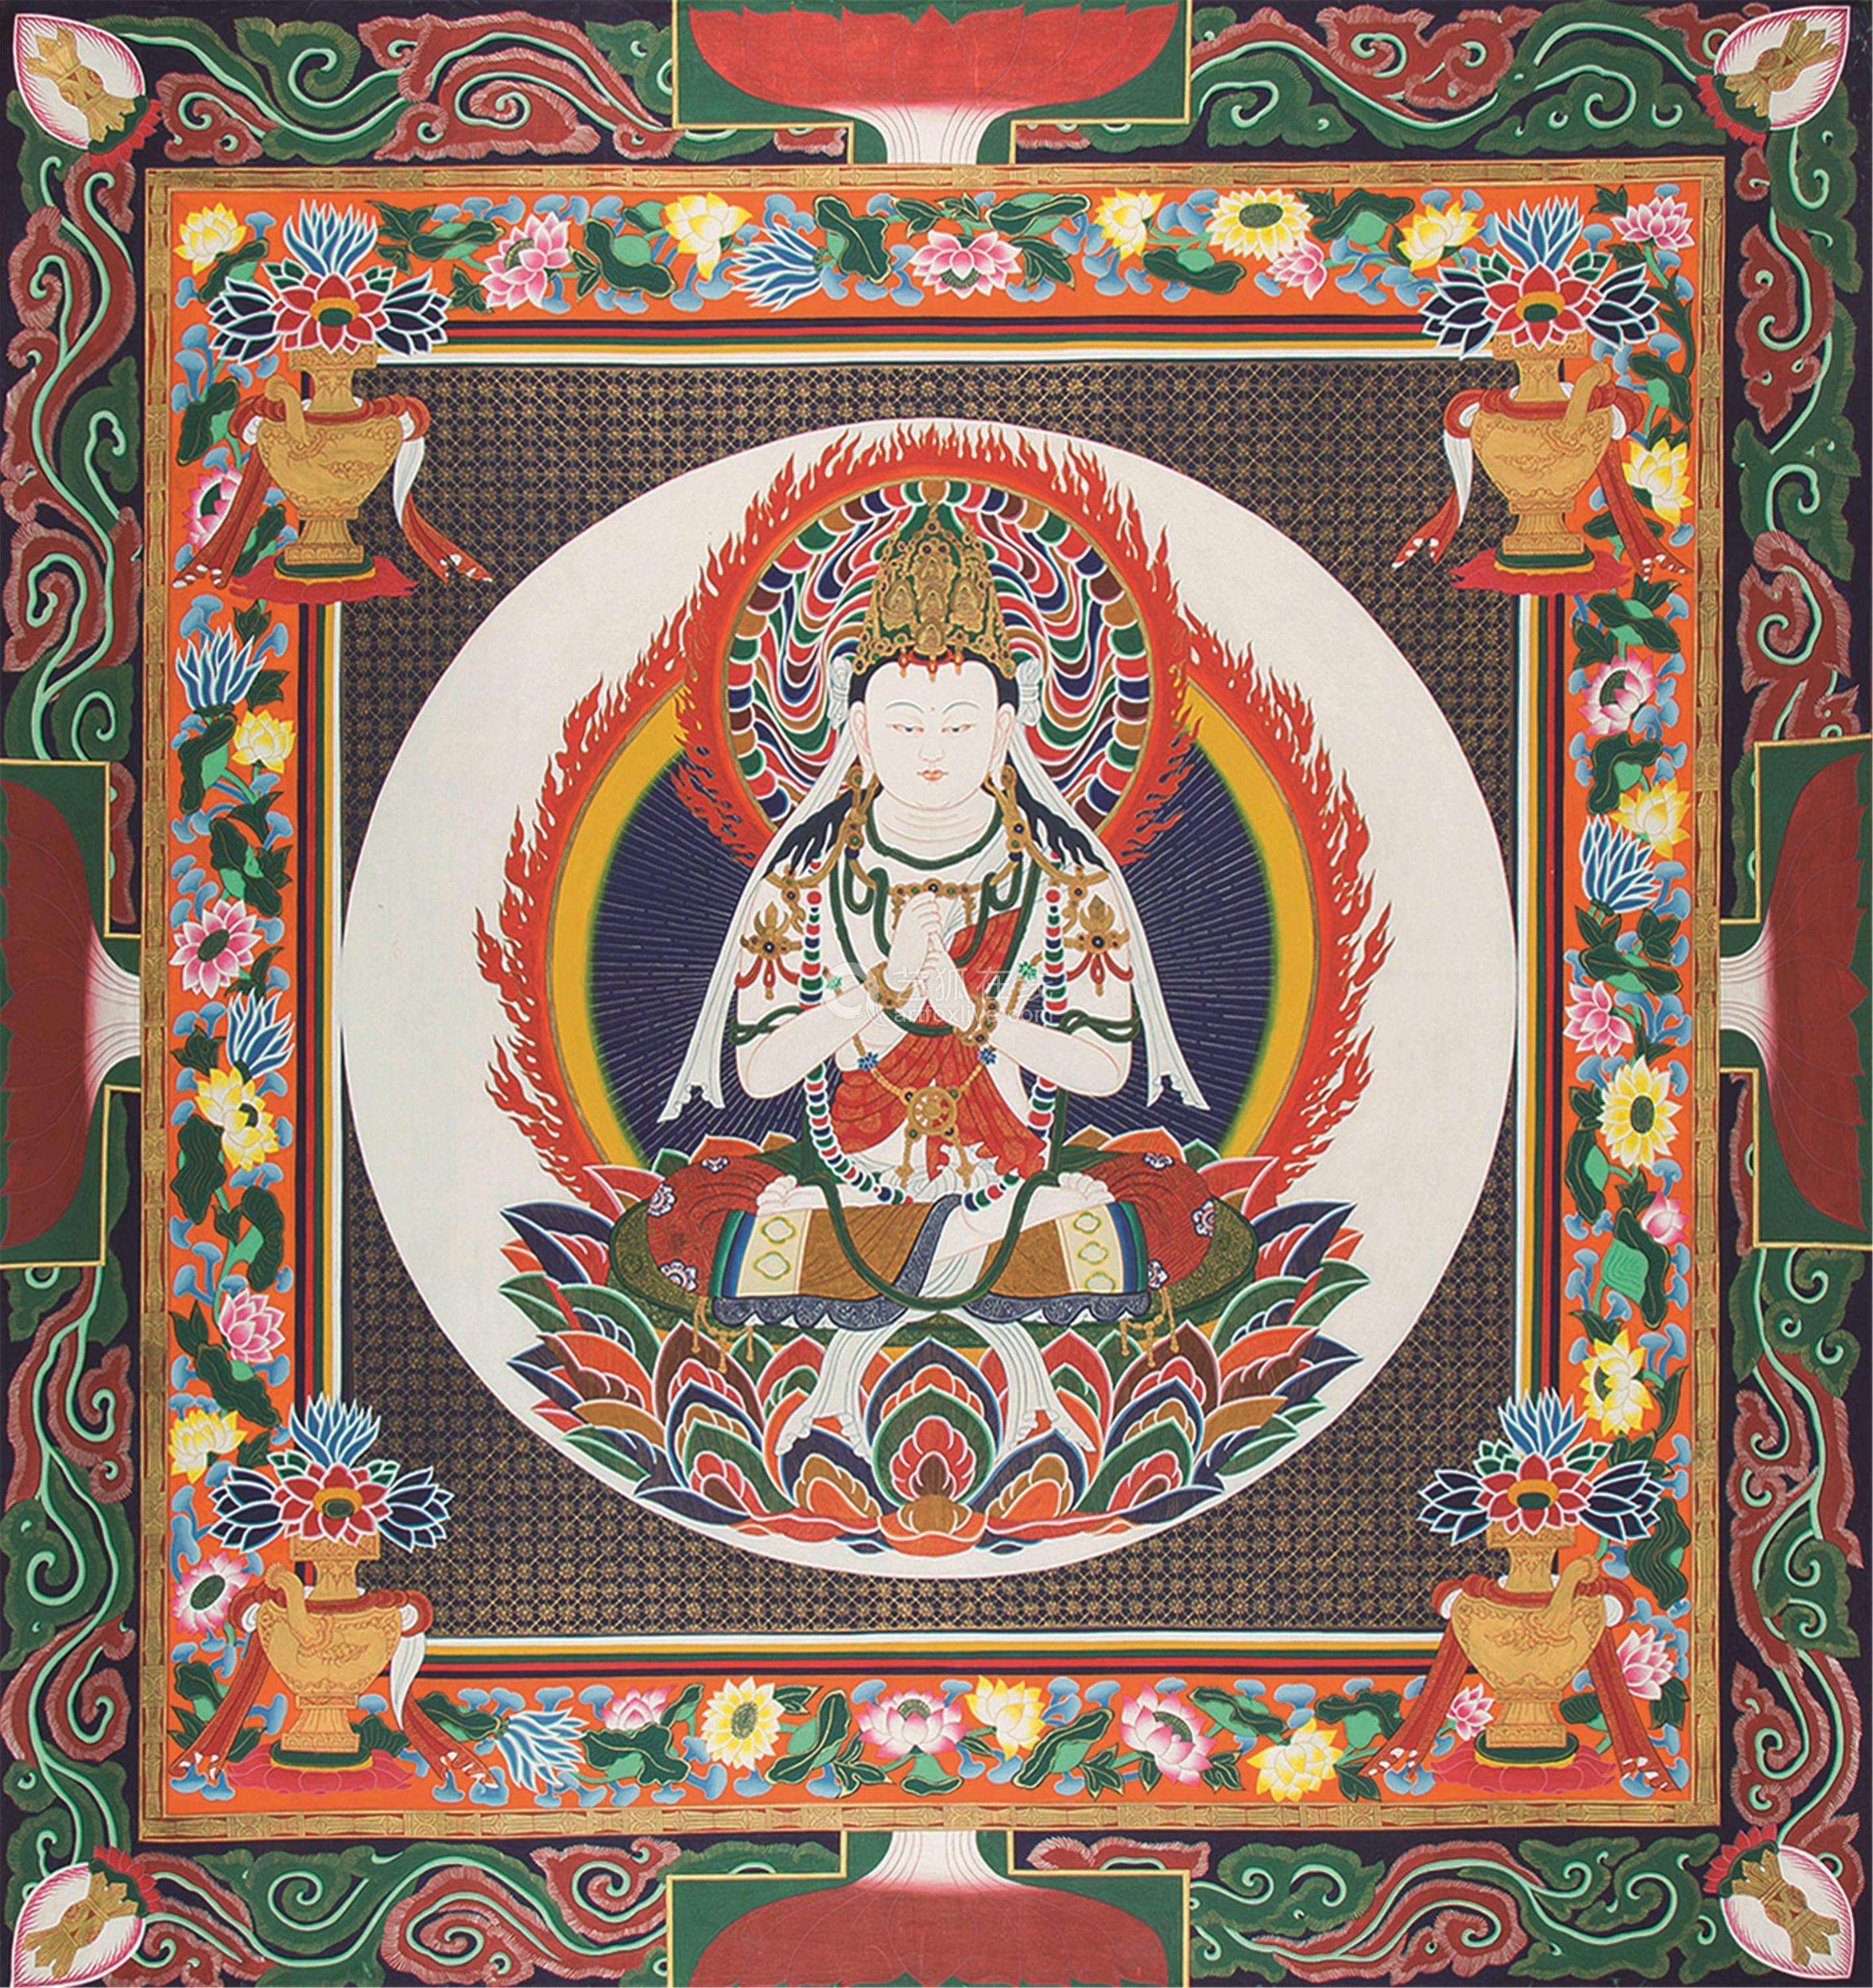 唐卡是藏族文化中一种独具特色的艺术形式,主要是指用彩缎装裱后悬挂